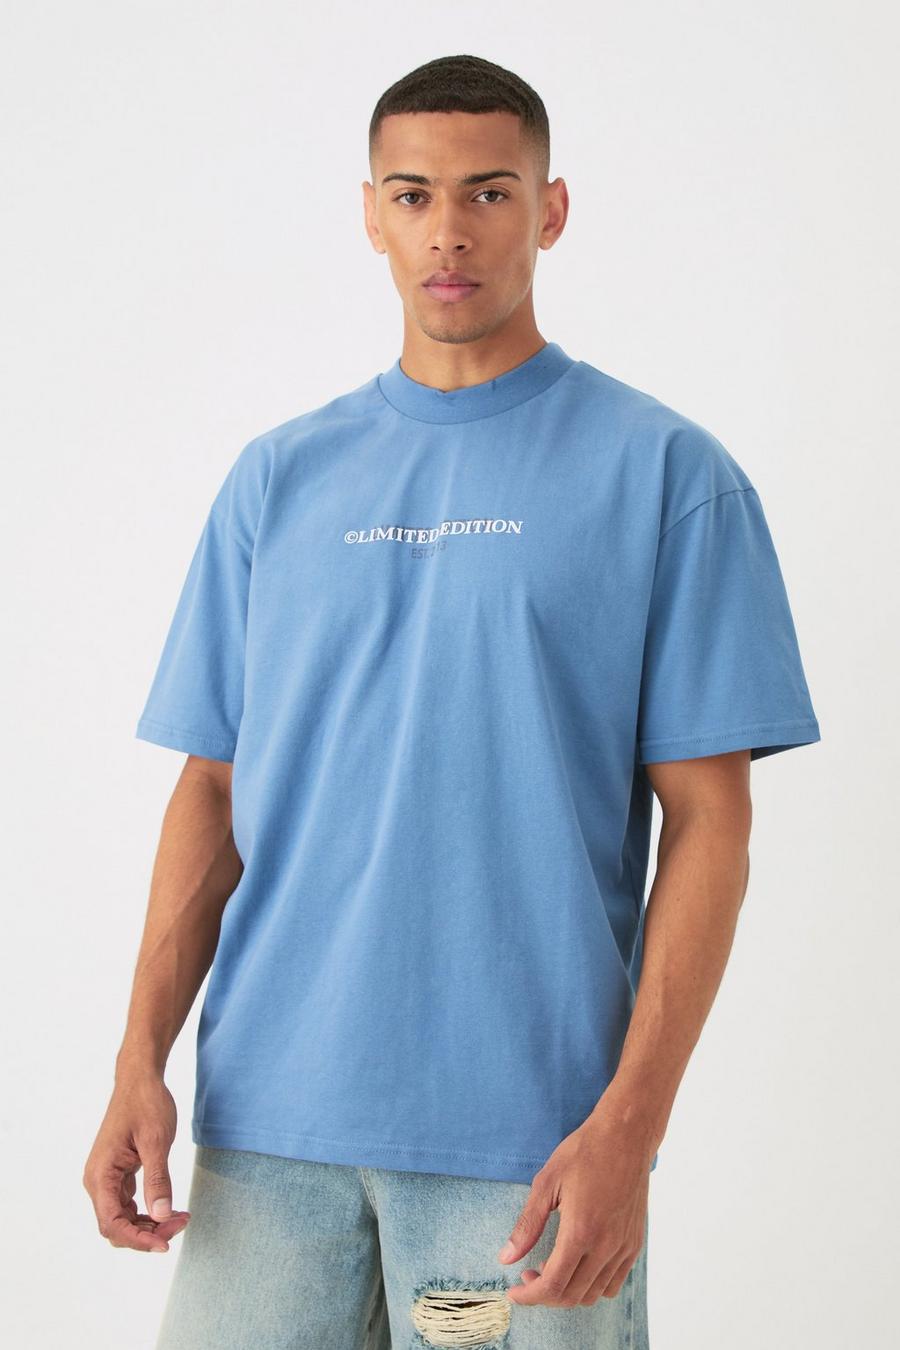 Camiseta oversize Limited gruesa, Dusty blue